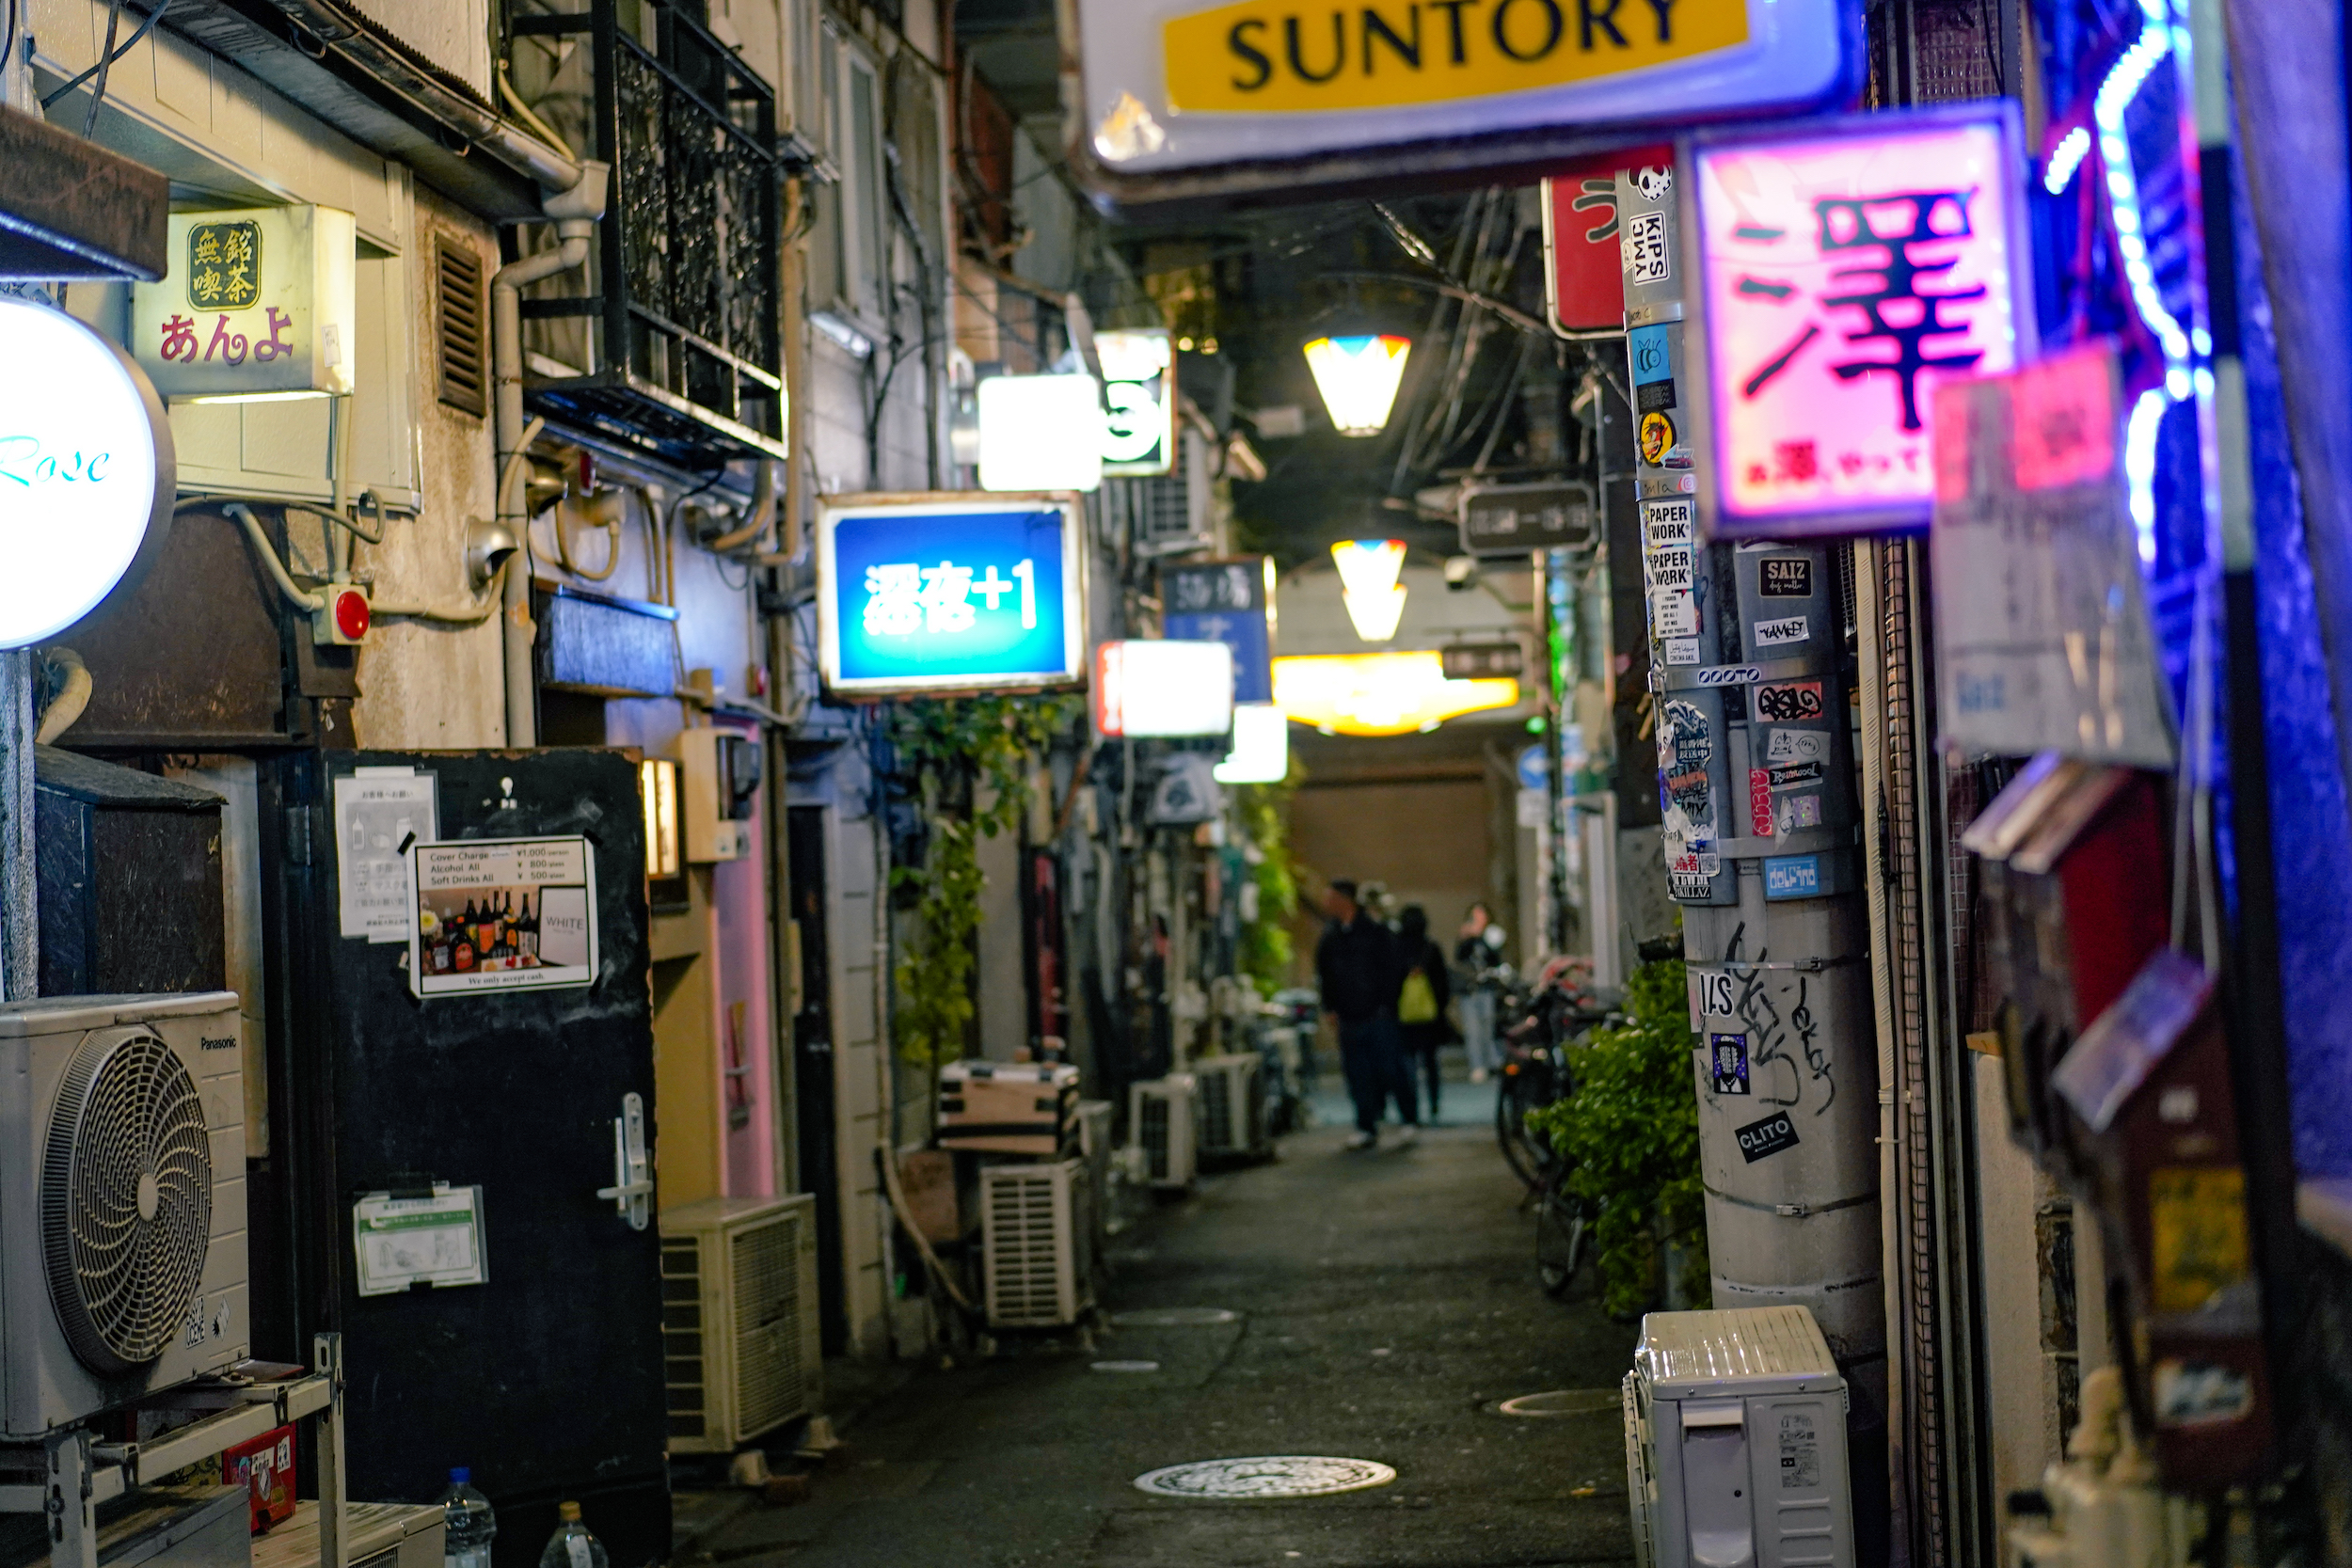 東京新宿夜間美食探索之旅